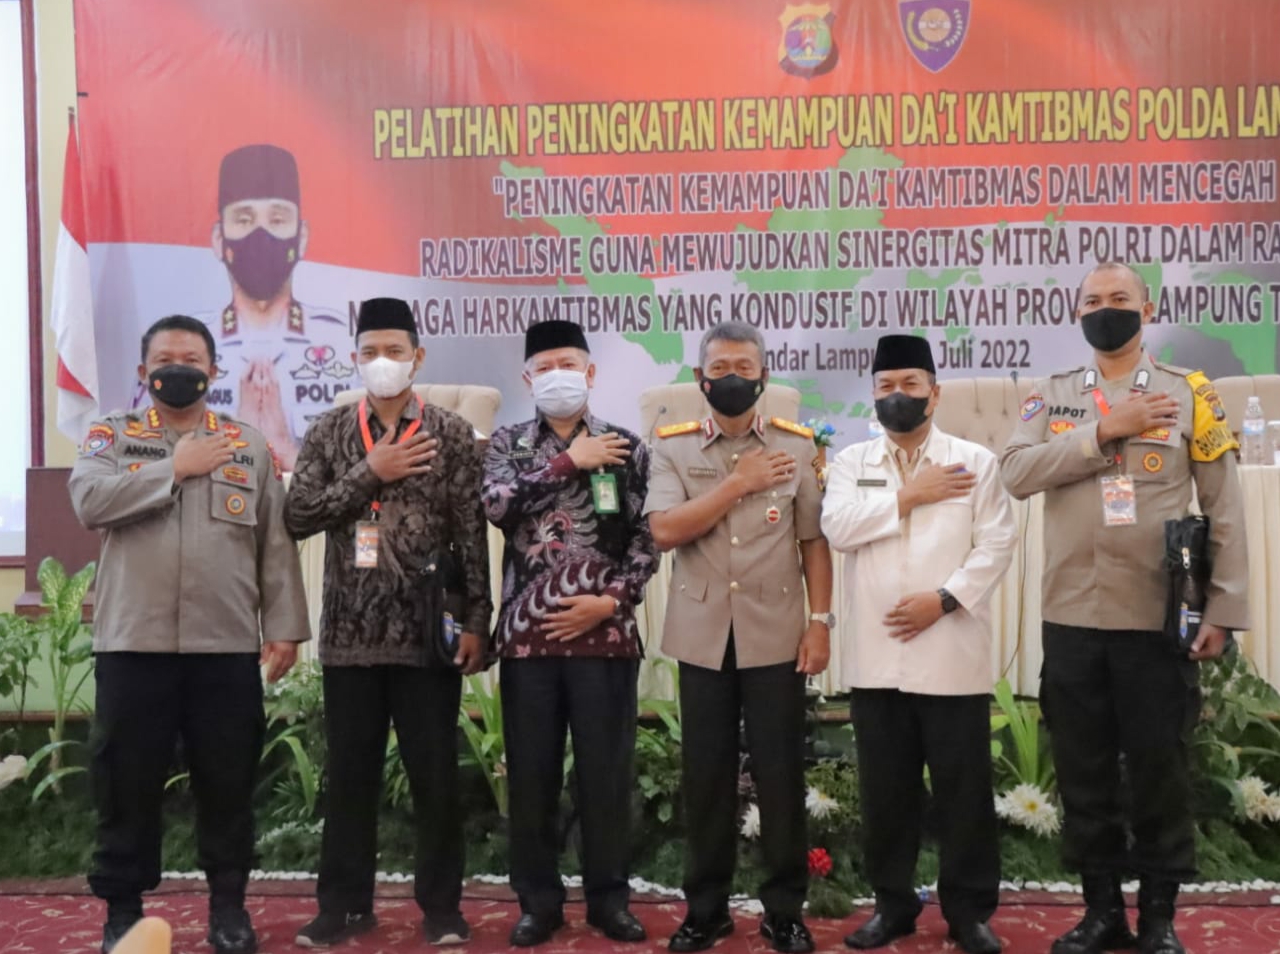 Cegah Paham Radikalisme, Polda Lampung Gelar Da